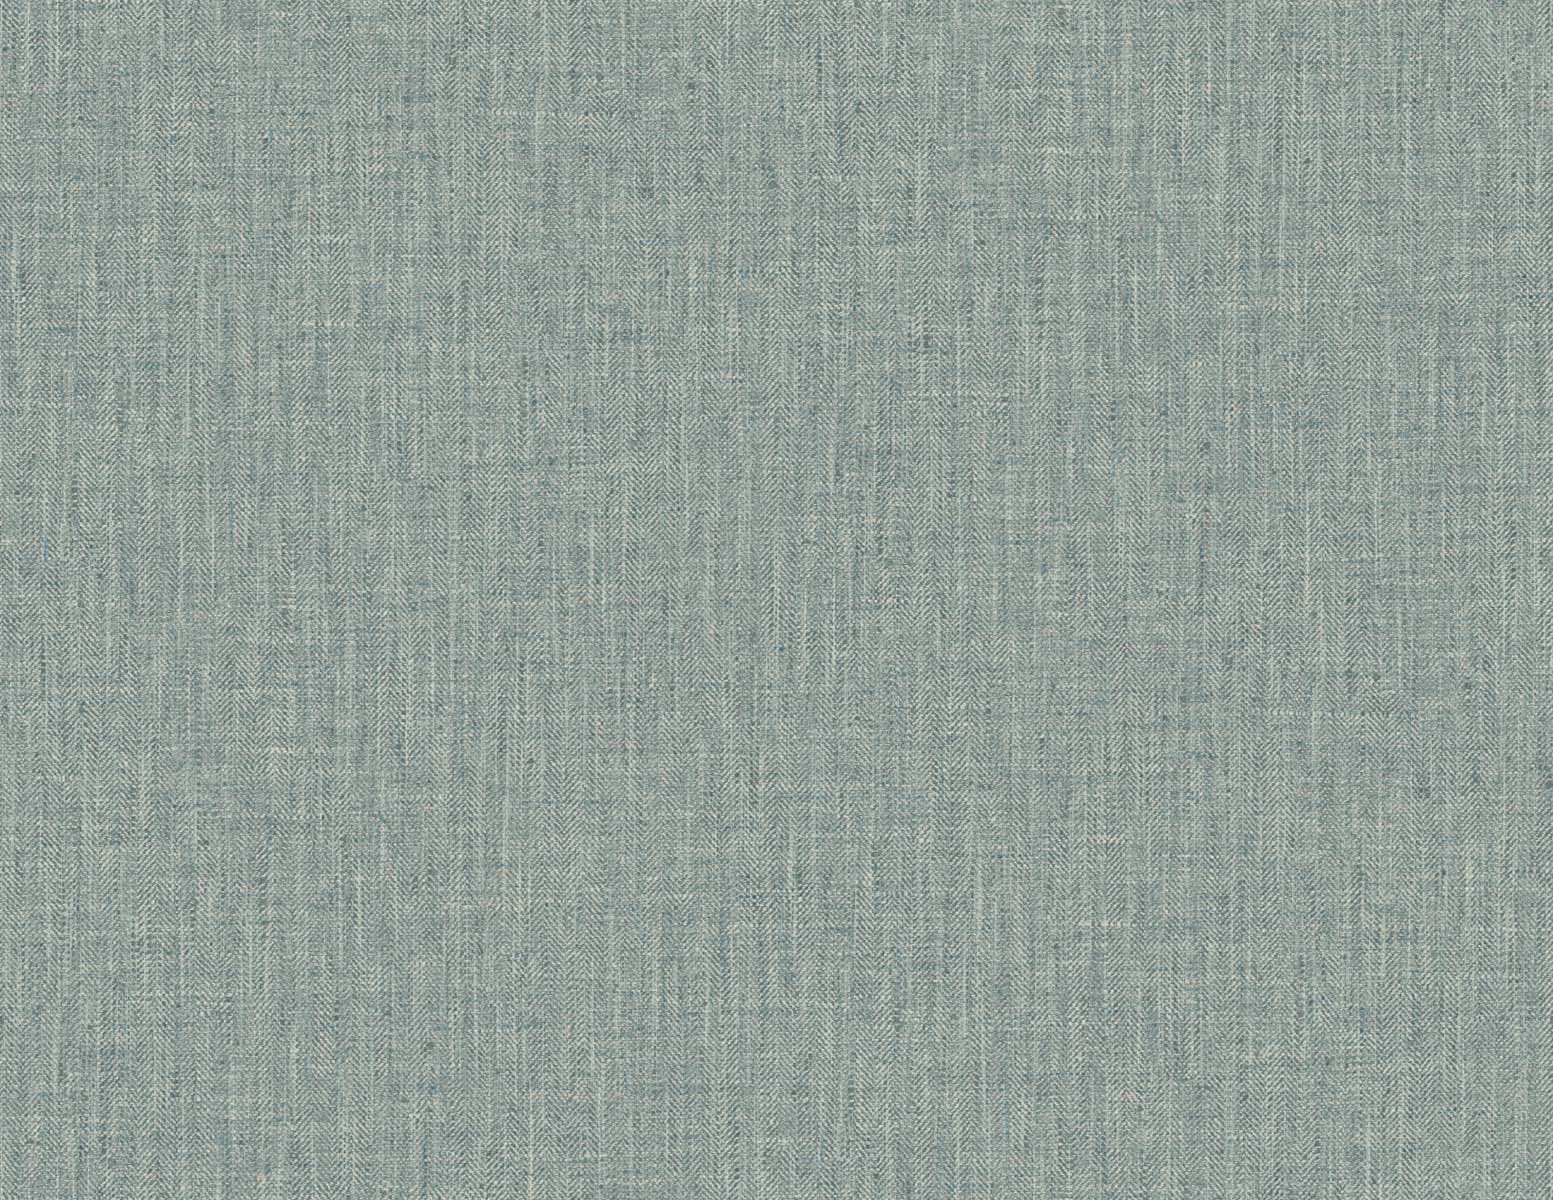 DuPont TG60043 Tedlar Textures Tweed Embossed Vinyl  Wallpaper Rosemary